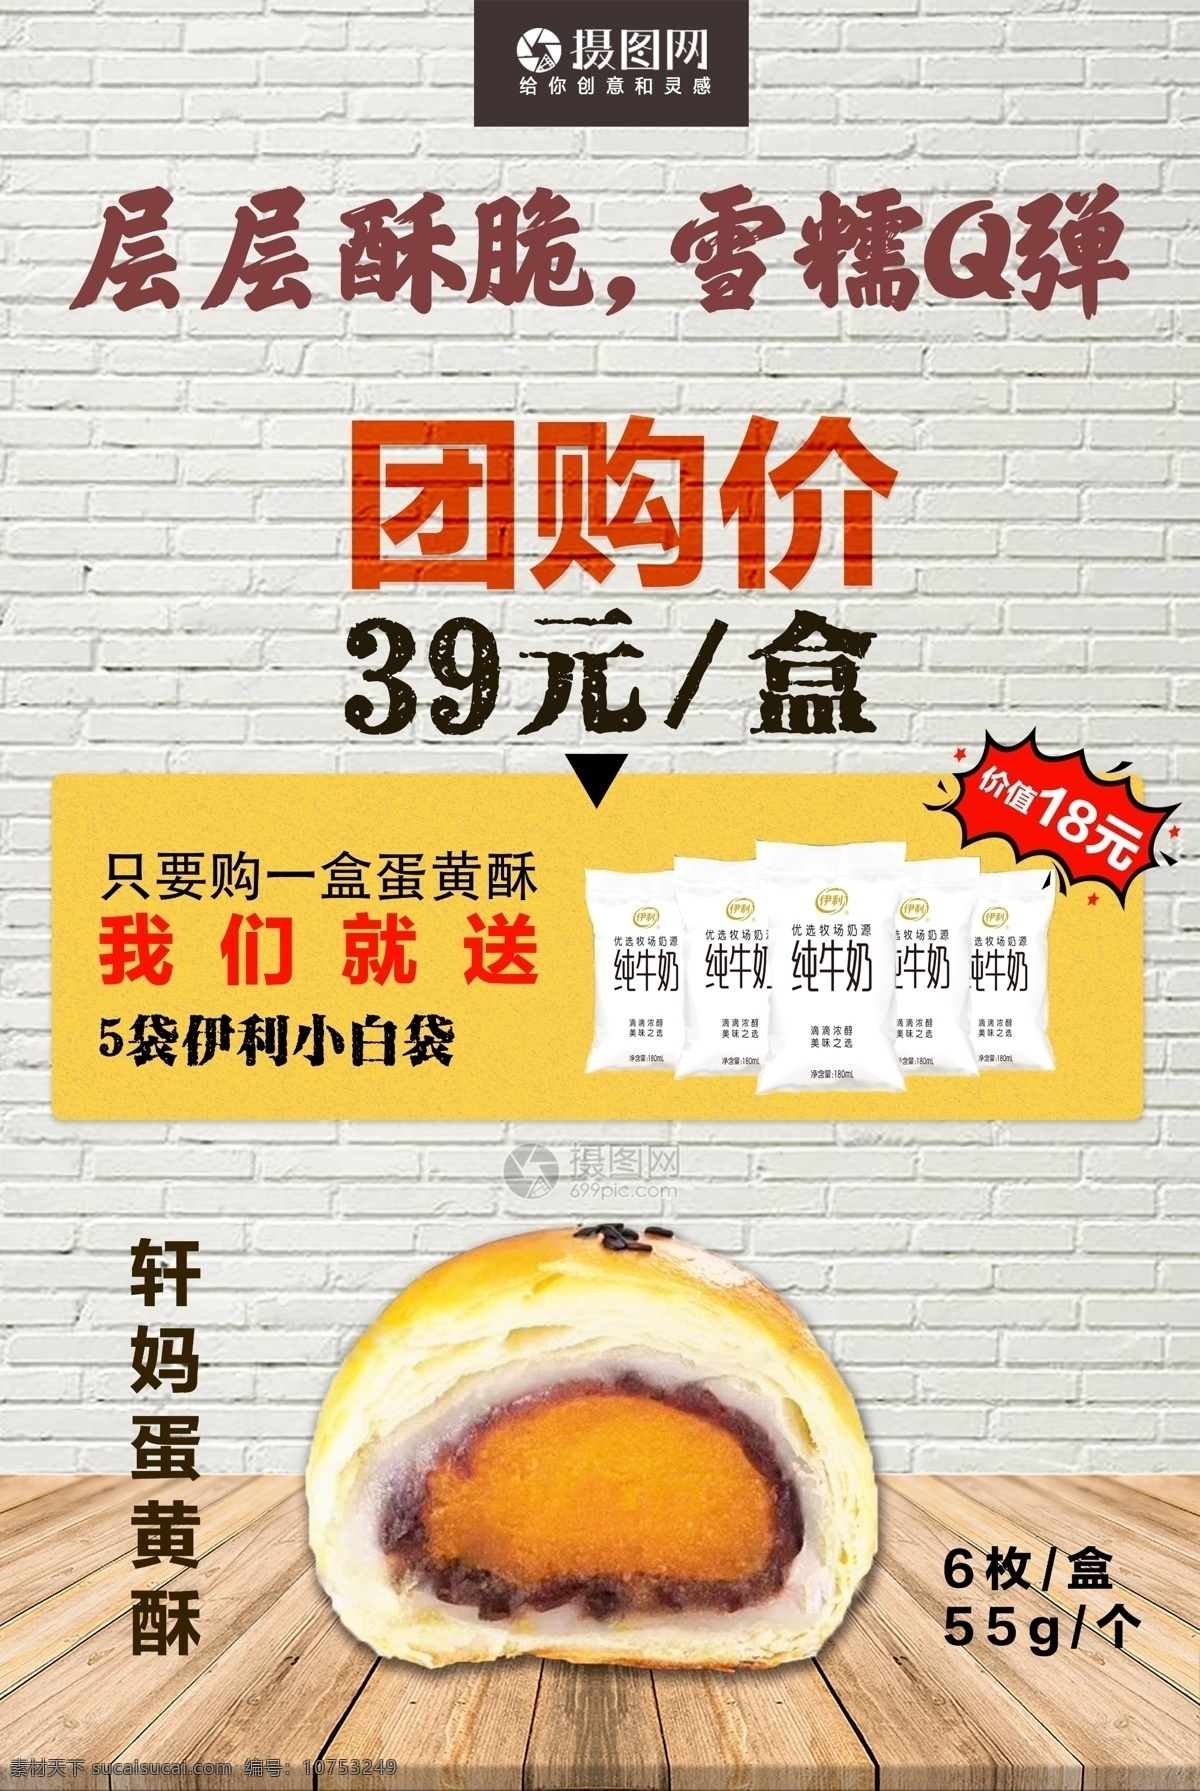 团购 蛋黄 派 促销 海报 食品 蛋黄酥 蛋黄派 产品 优惠 拼单 购物 美食海报